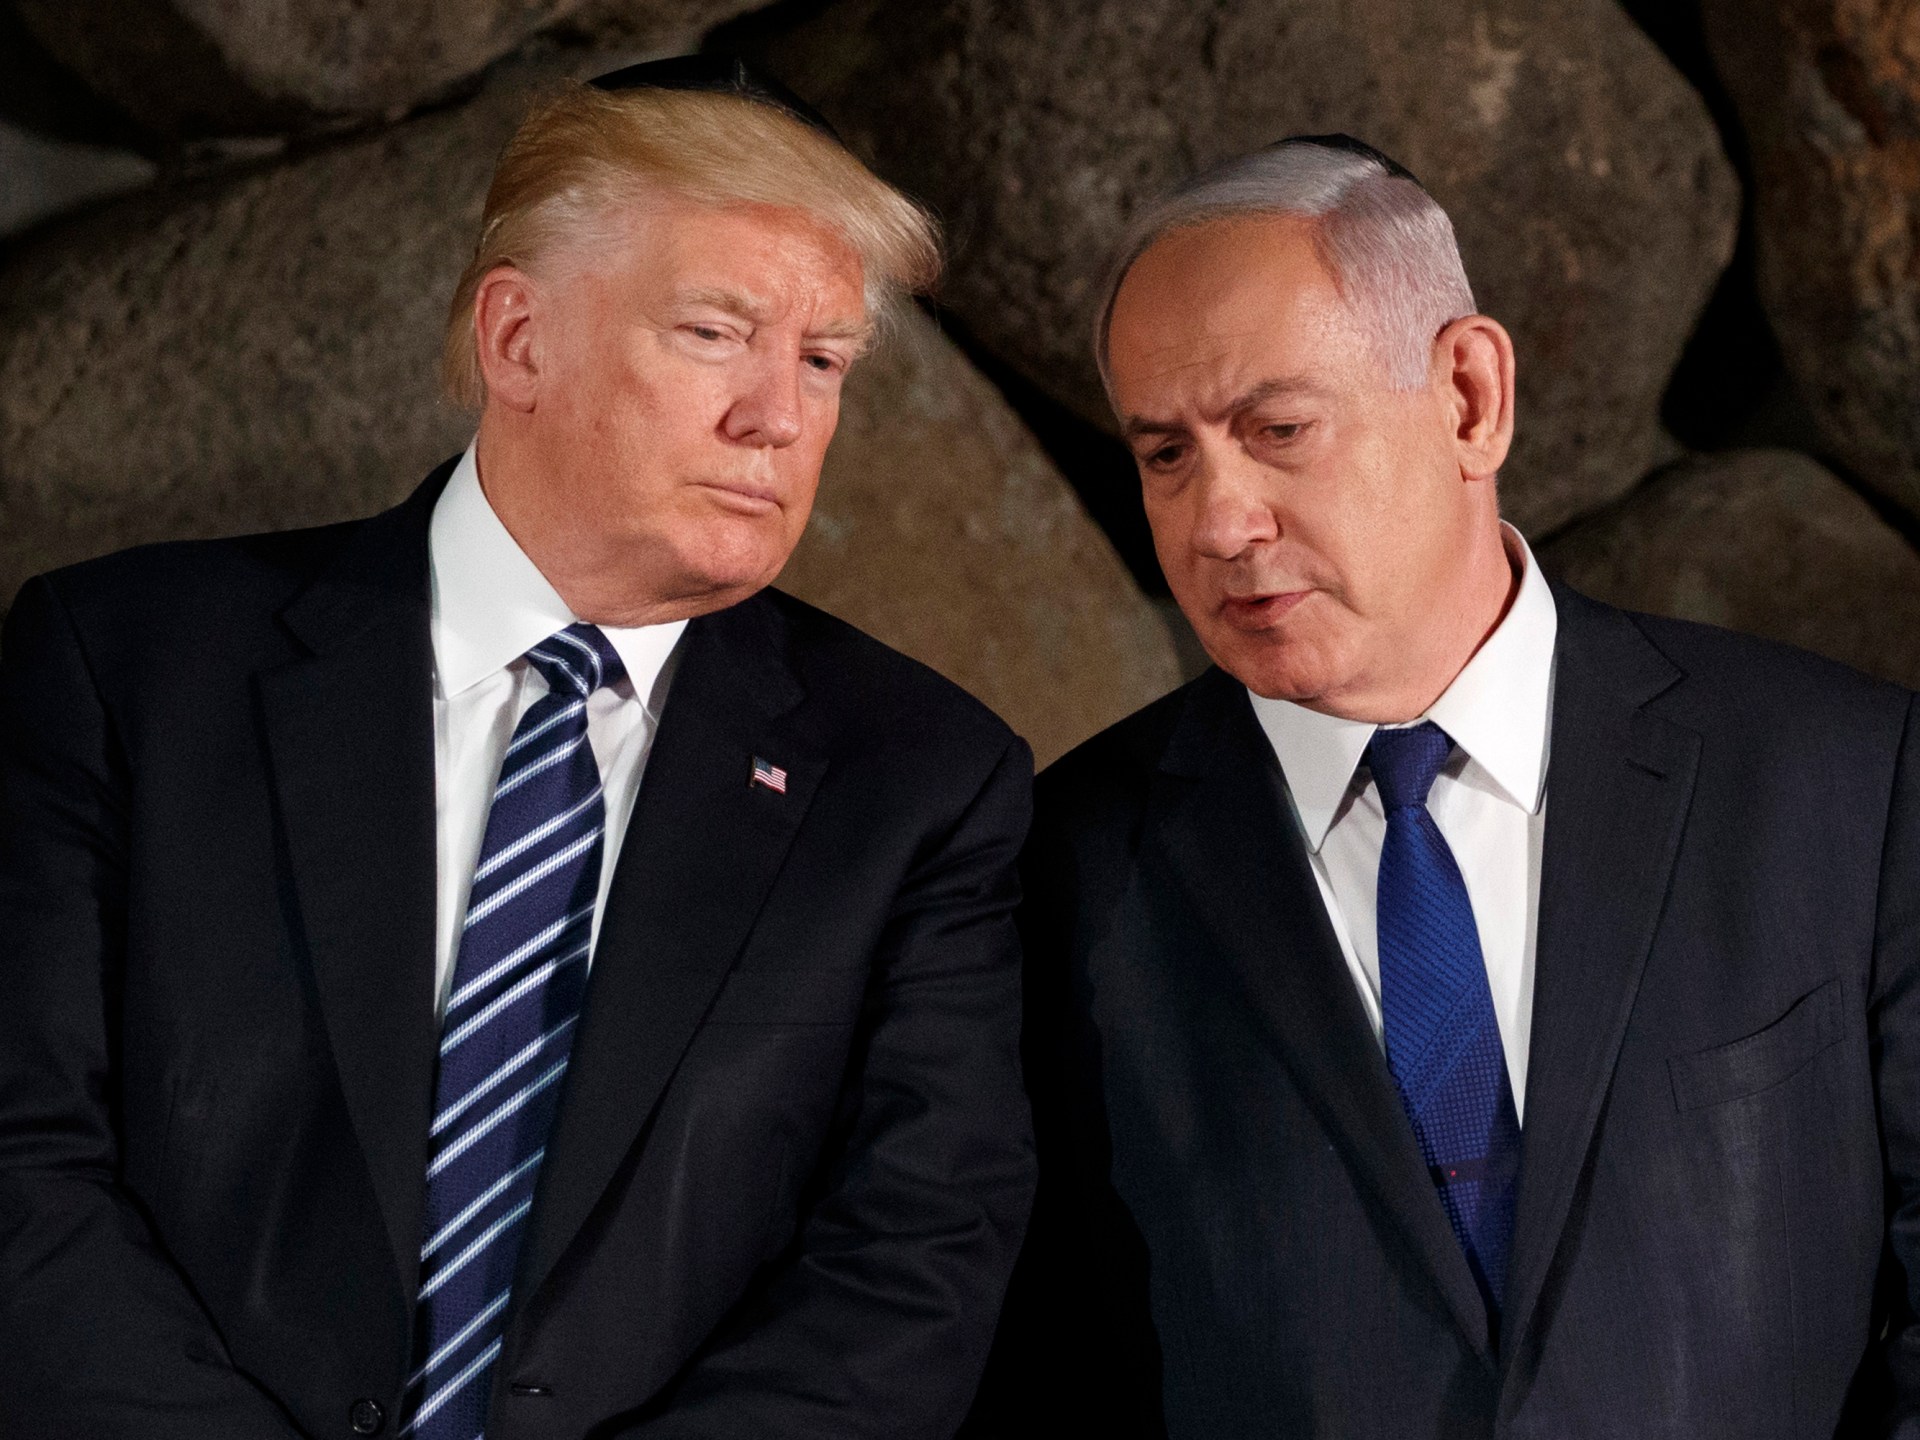 トランプ大統領、ガザでのPR戦争に負けたイスラエルは戦争を「迅速に」終わらせなければならないと語る | イスラエルによるガザ戦争のニュース